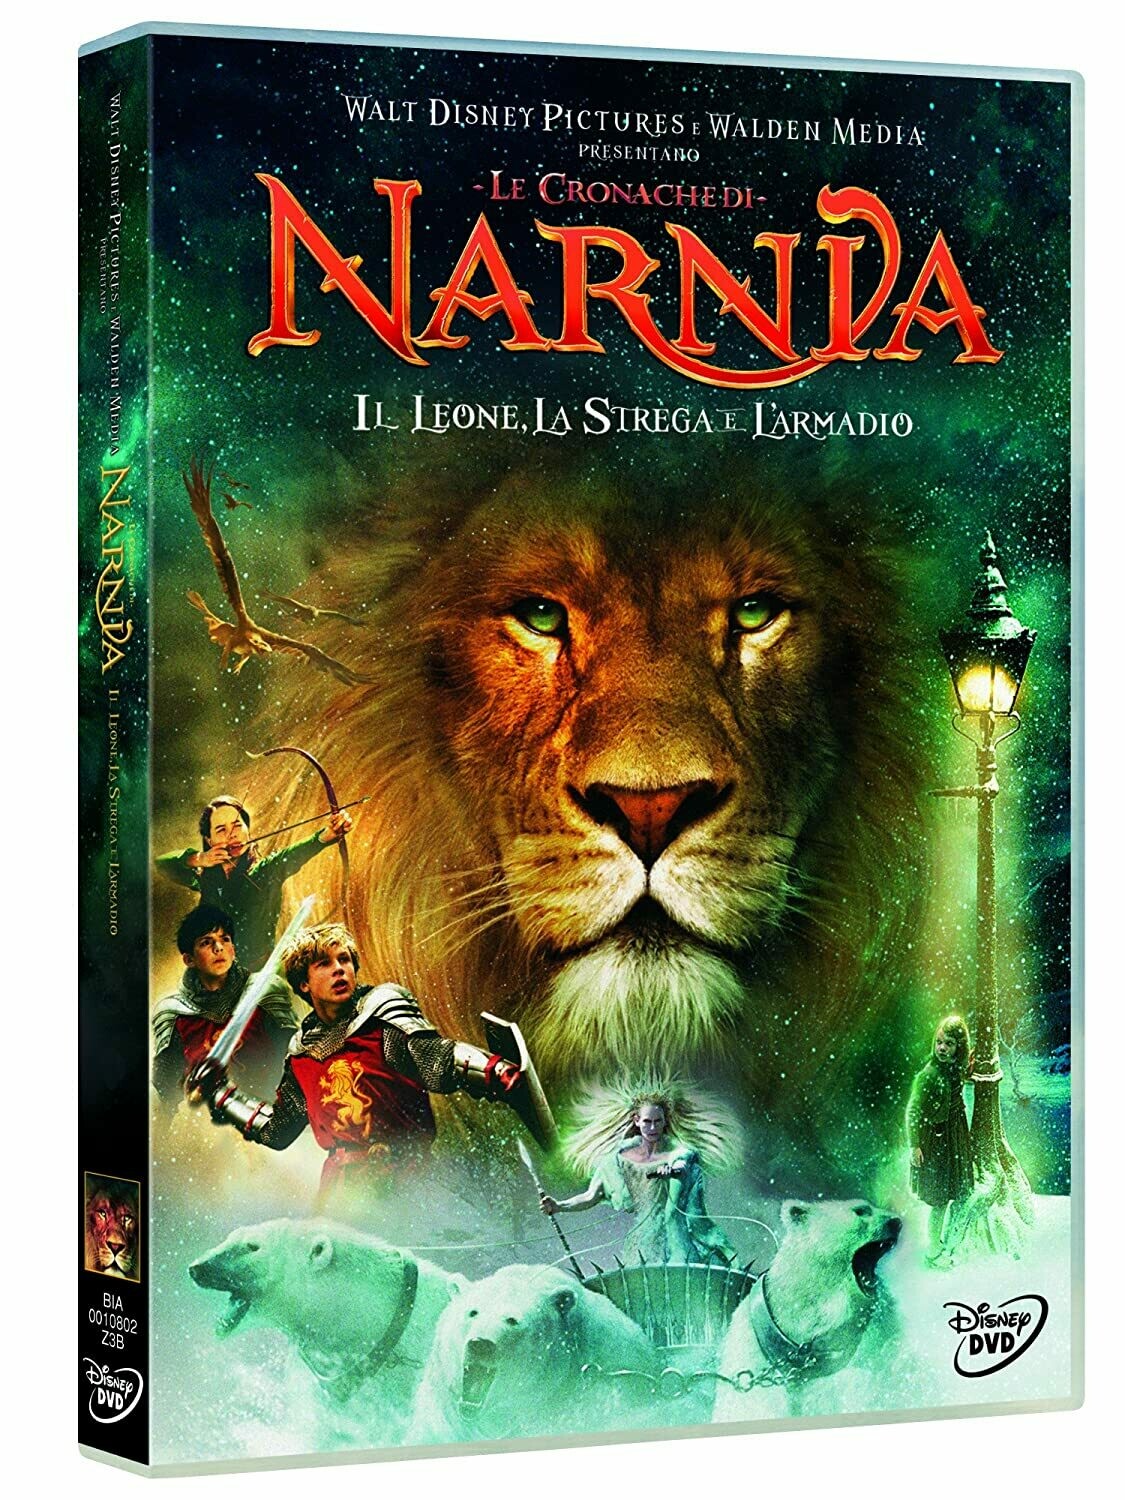 Narnia - Il leone, la strega e l'armadio DVD